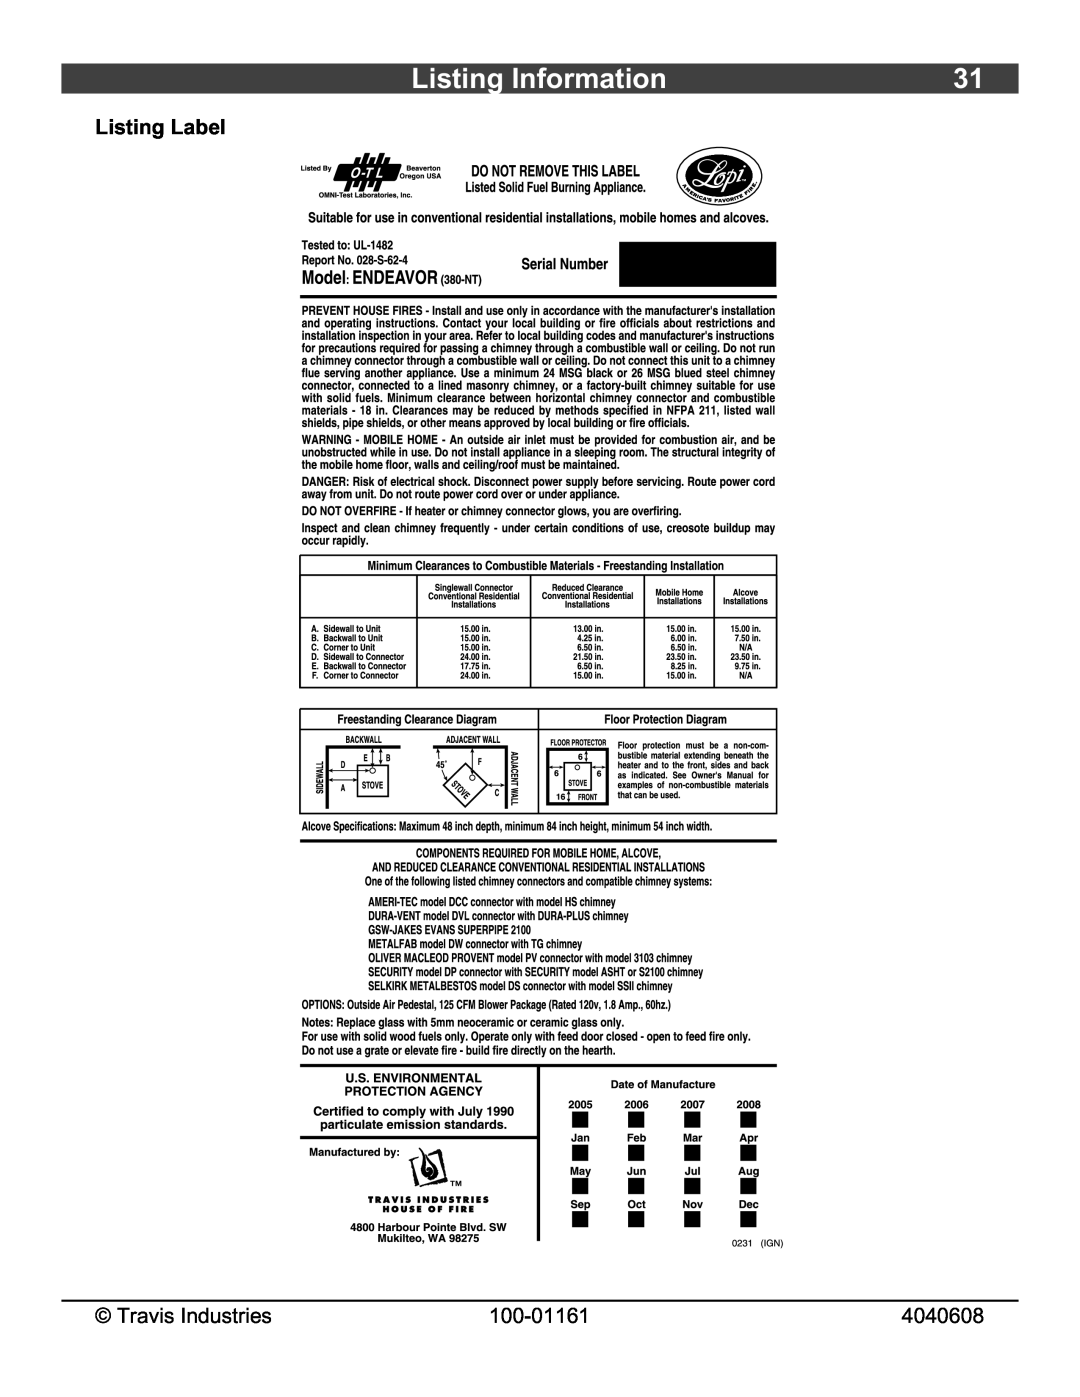 Lopi Endeavor owner manual Listing Information, Listing Label, Travis Industries, 100-01161, 4040608 